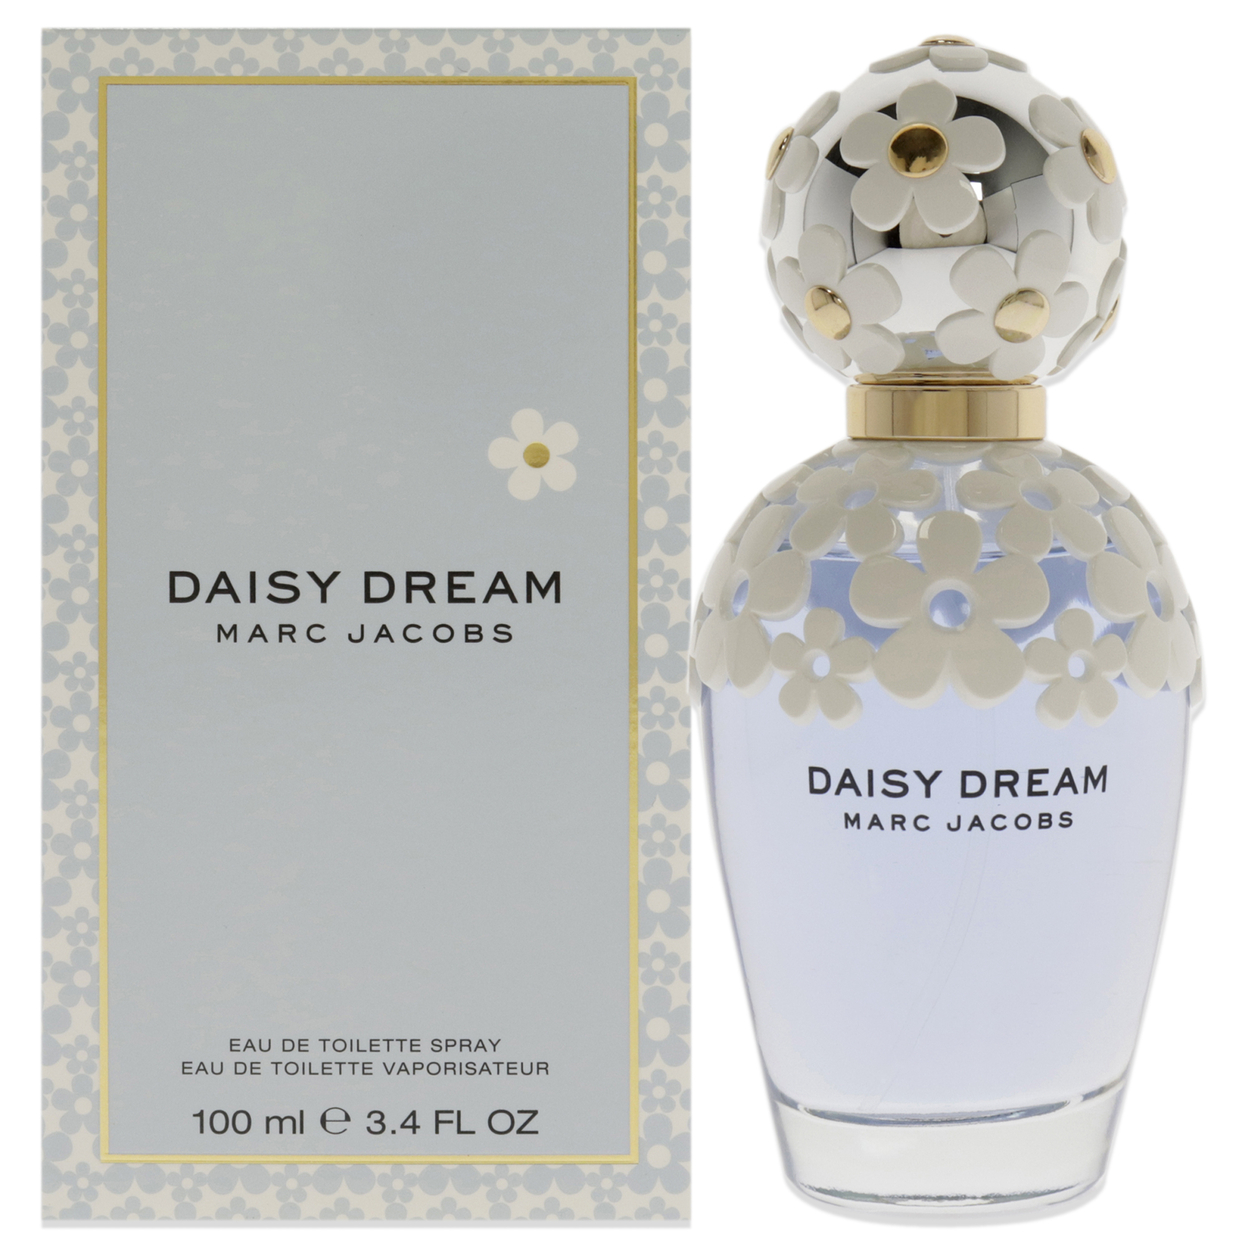 Marc Jacobs Daisy Dream Eau De Toilette, Perfume for Women, 3.4 oz - image 1 of 2